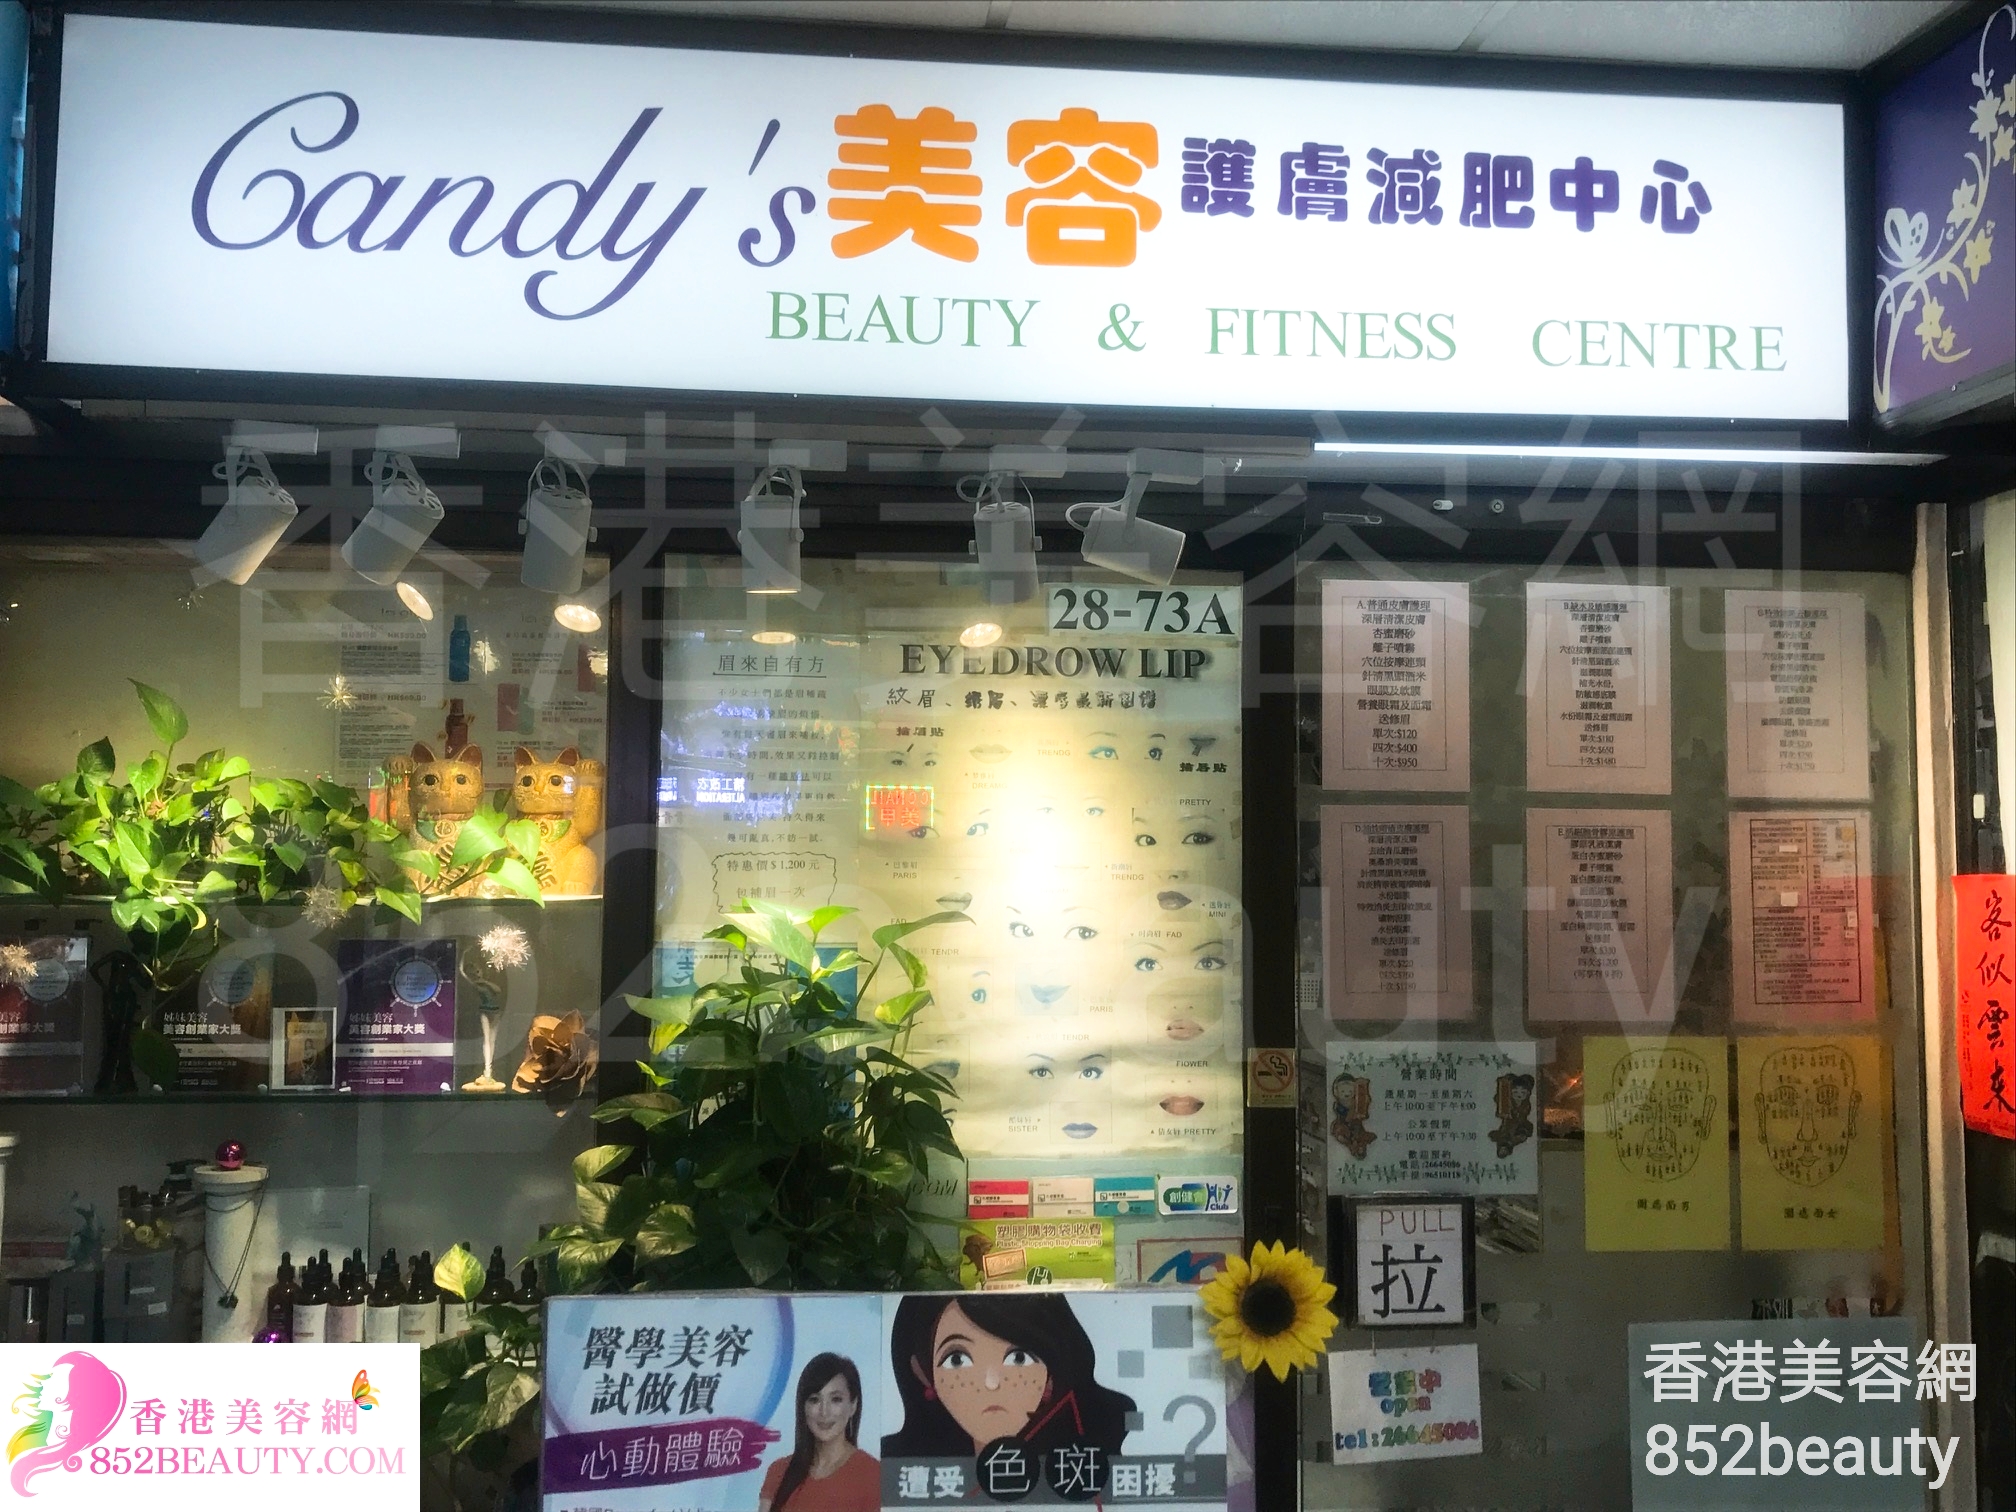 修眉/眼睫毛: Candy's 美容護膚減肥中心